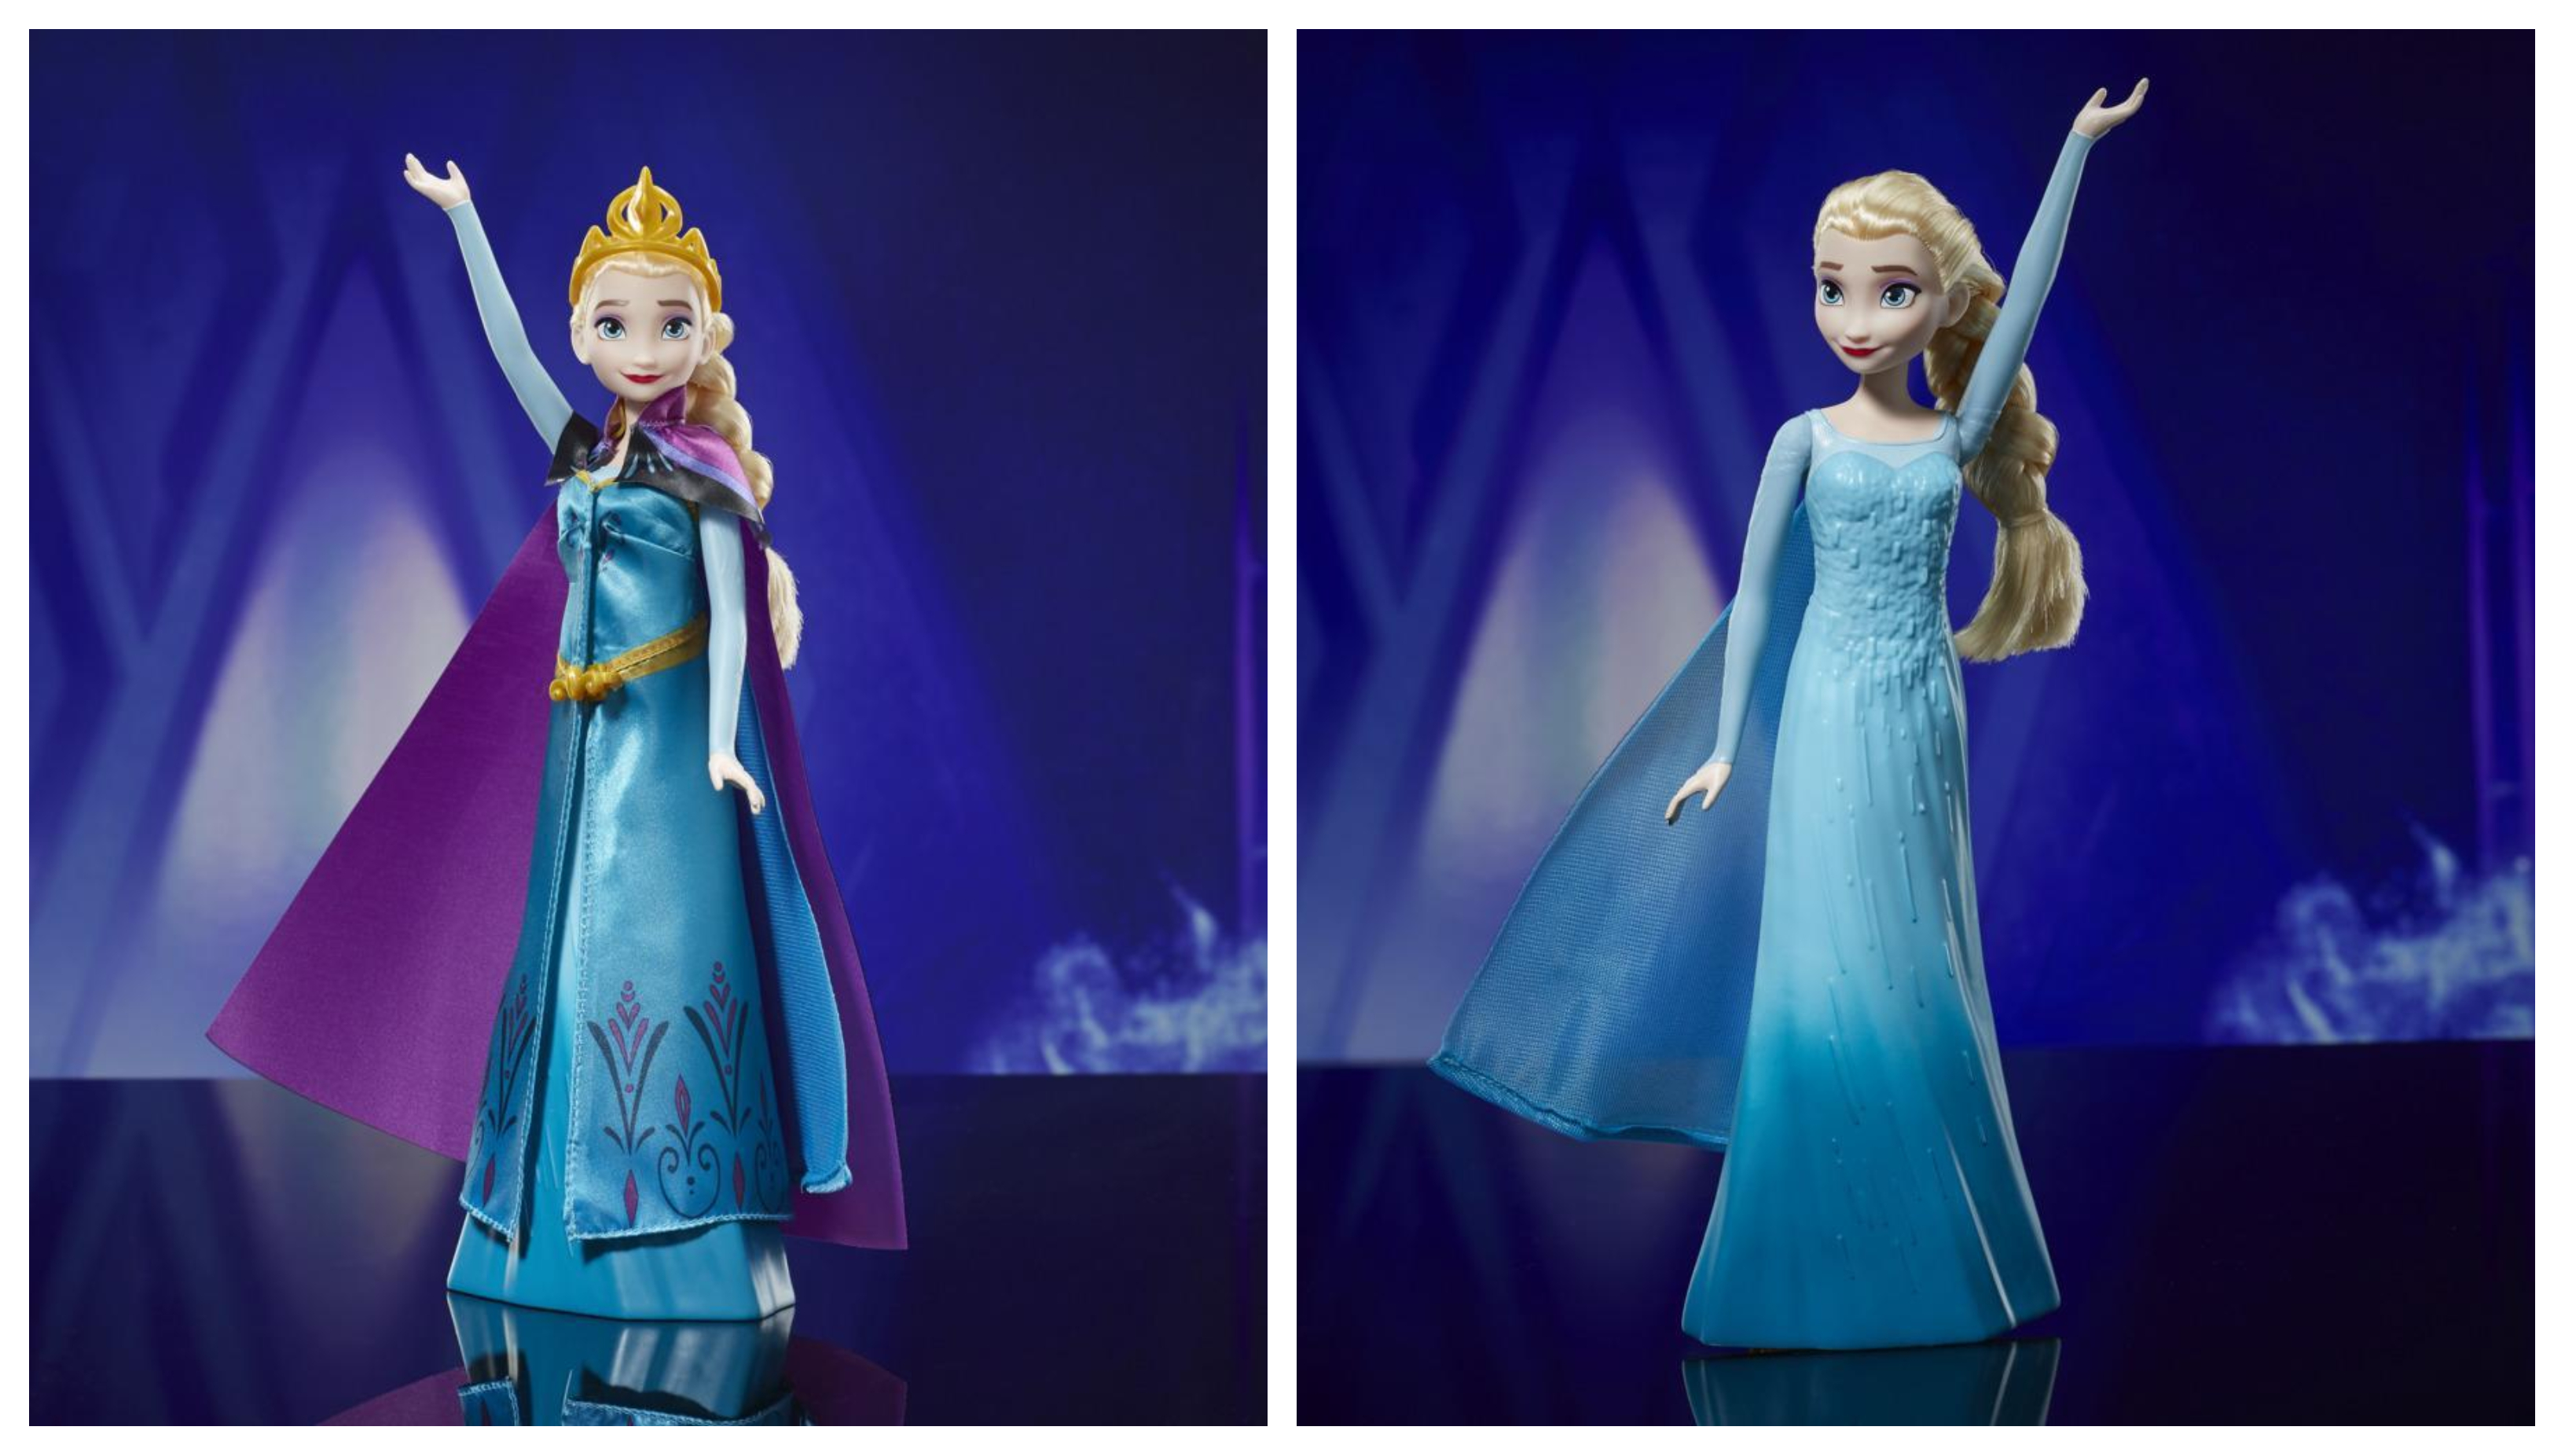 Bábika Hasbro Disney's Frozen Elsa's Royal Reveal poteší každú malú fanúšičku módy aj animovaného filmu Ľadové kráľovstvo.